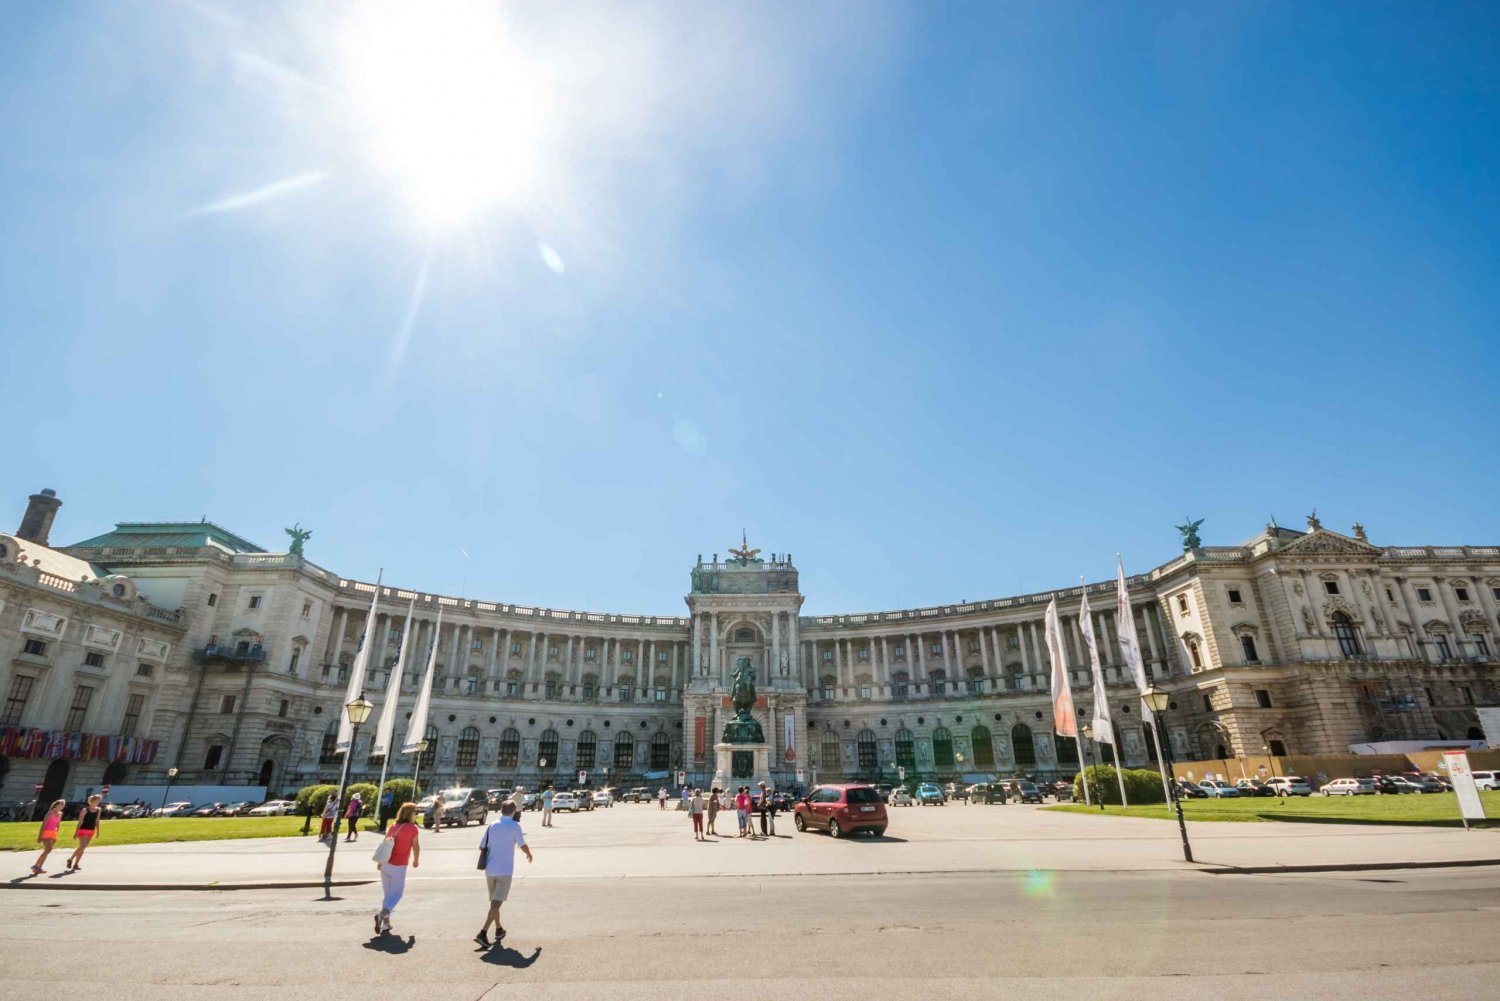 Wien PASS: 1, 2, 3 eller 6 dager med sightseeing